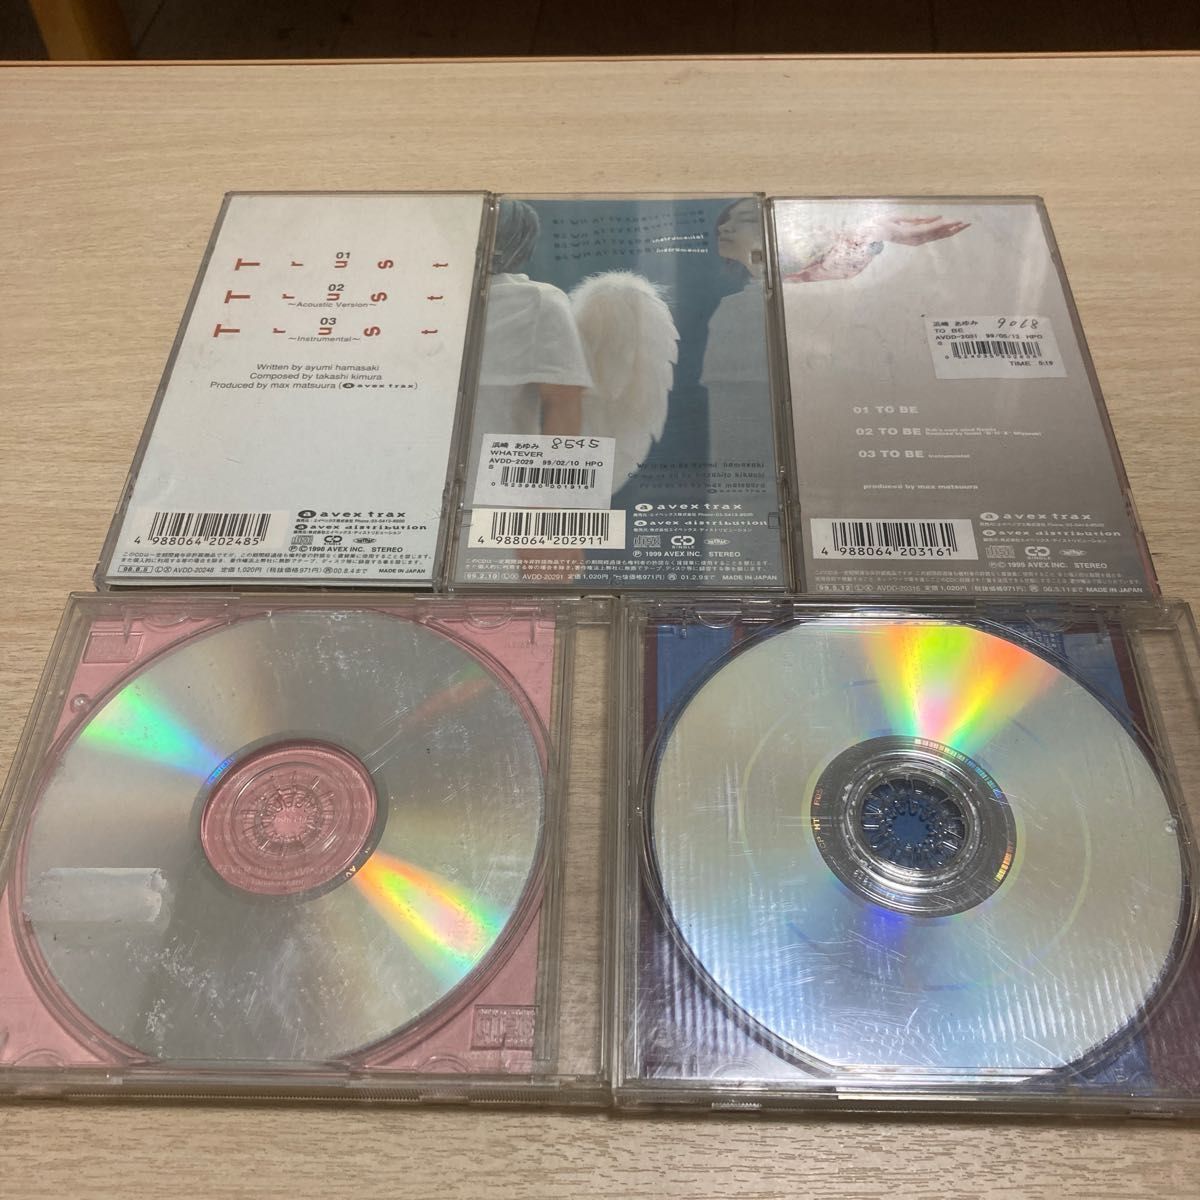 浜崎あゆみ　8センチ シングルCD 5枚セット